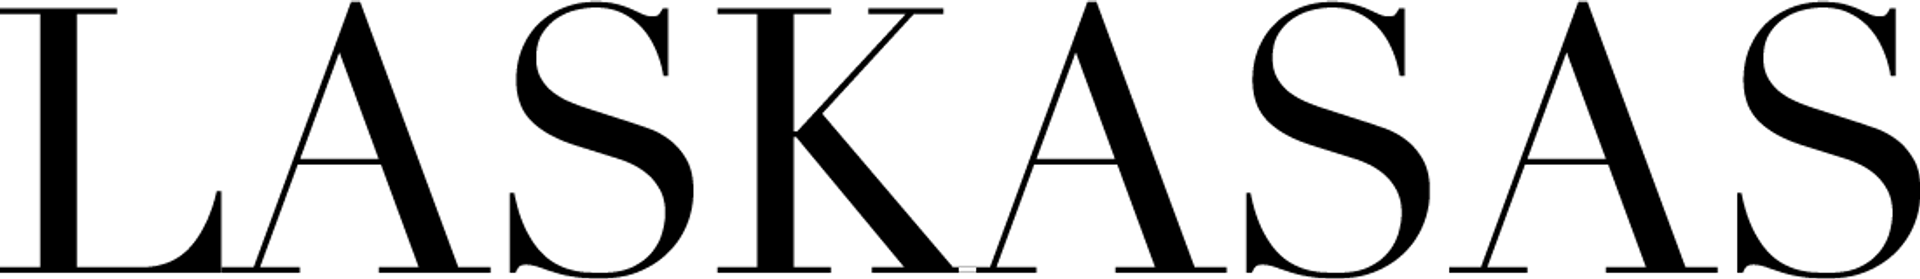 Laskasas logo